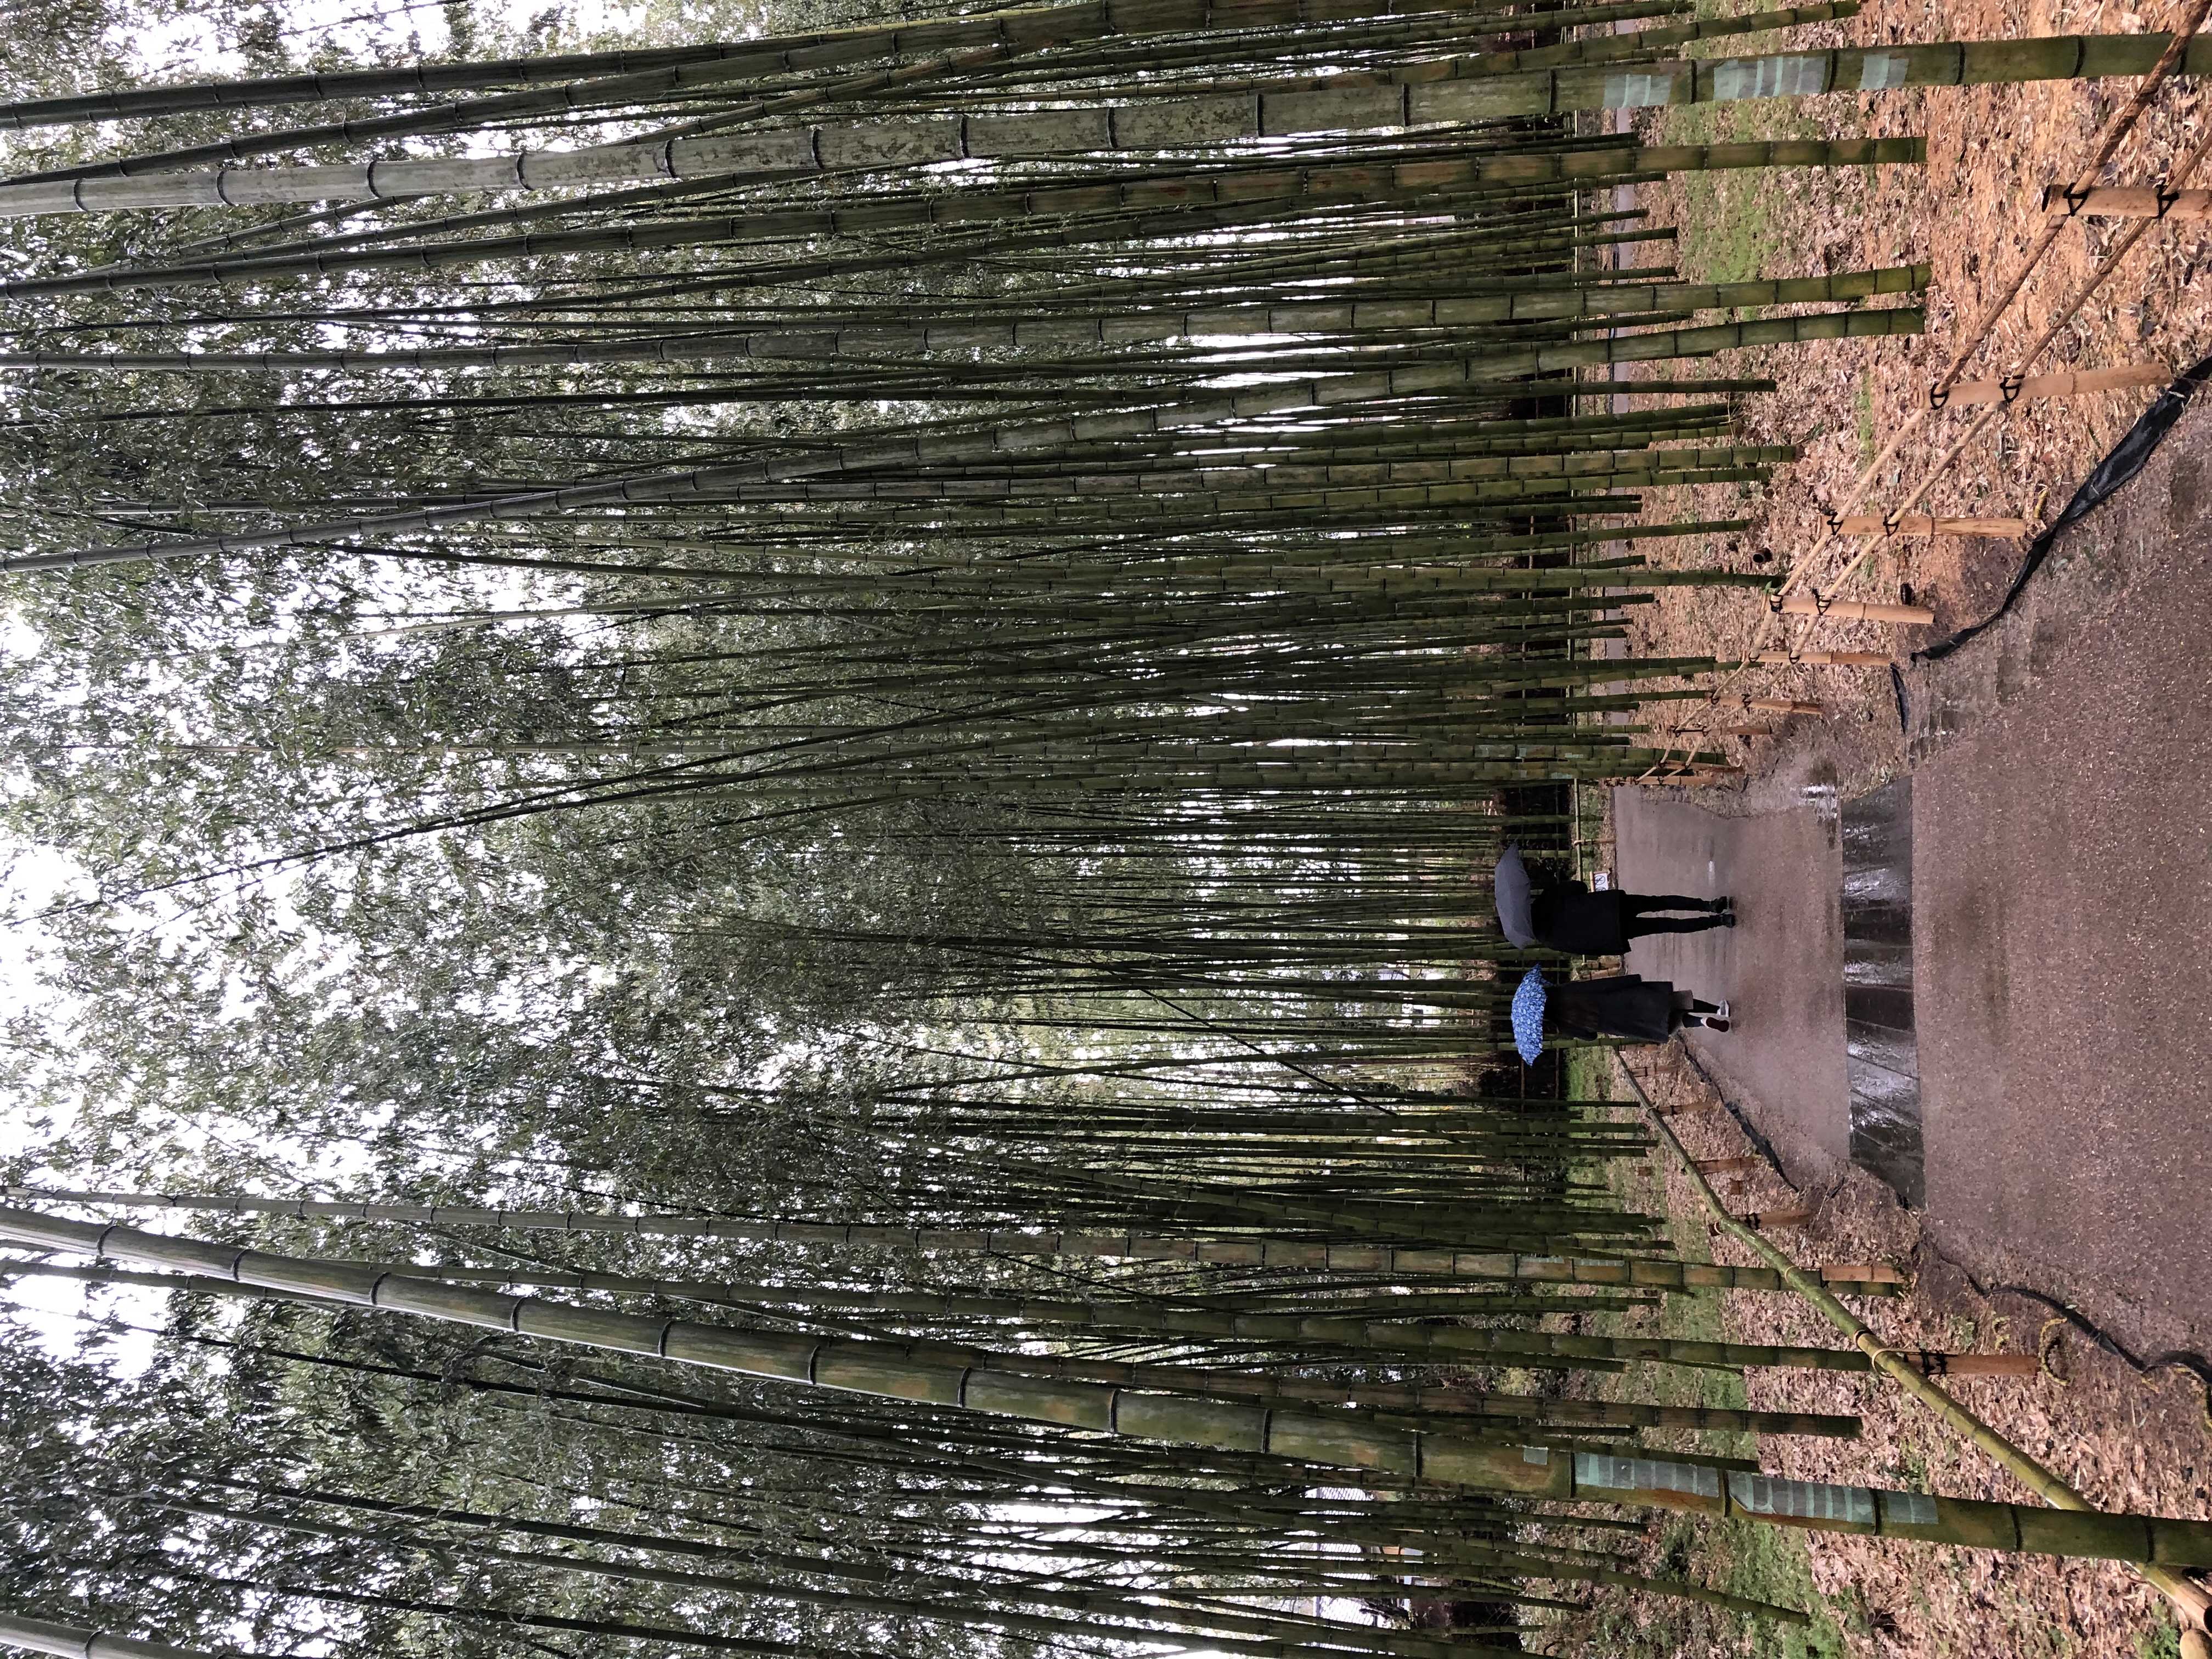 img 0782 - 嵐山景點, 嵯峨嵐山, 竹林の小徑, 竹林之道, 竹林小徑